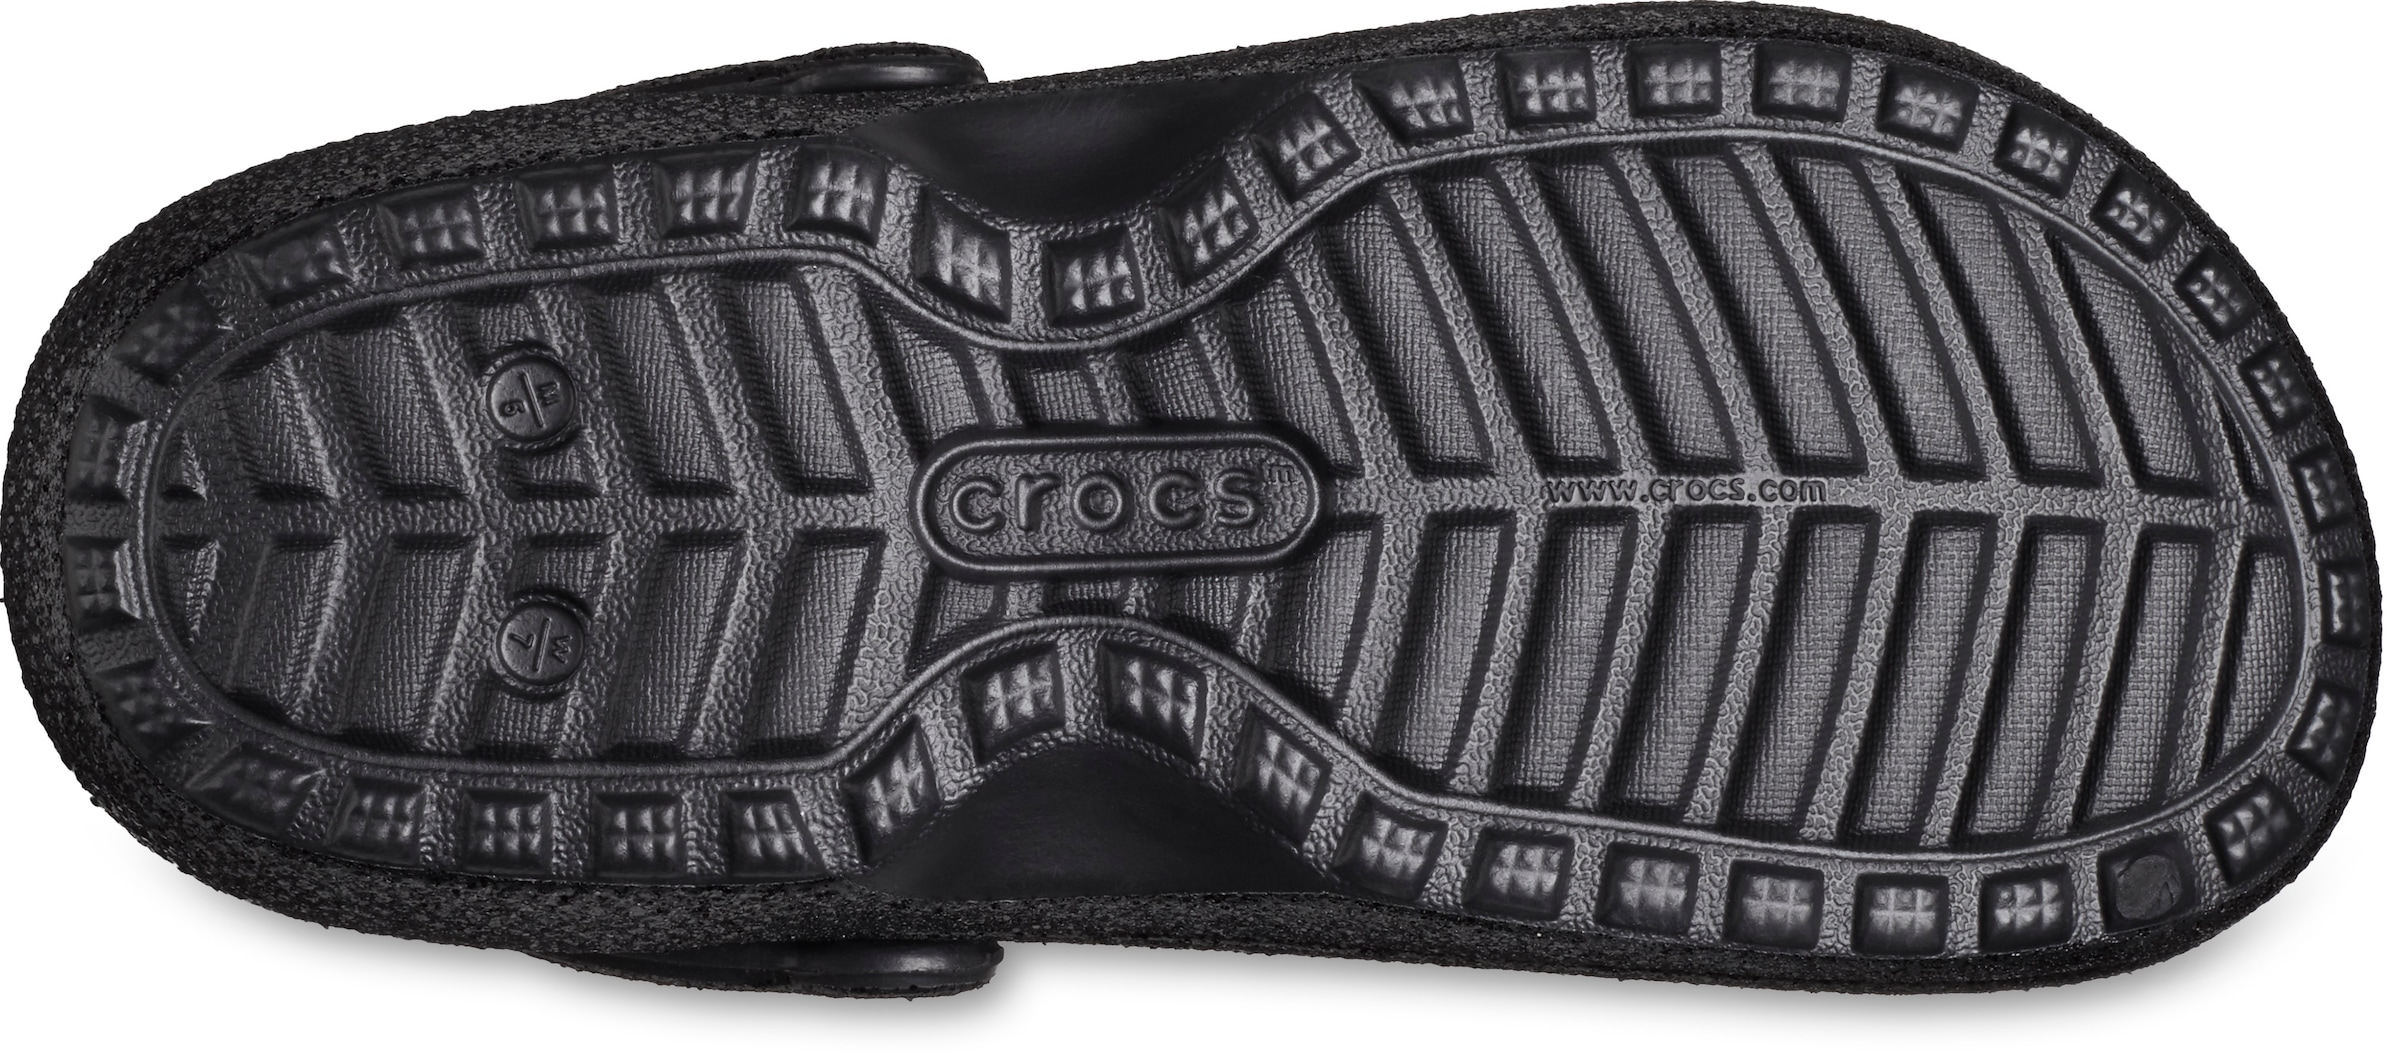 Crocs Clog »Classic Glitter Lined Clog«, für Drinnen und Draußen